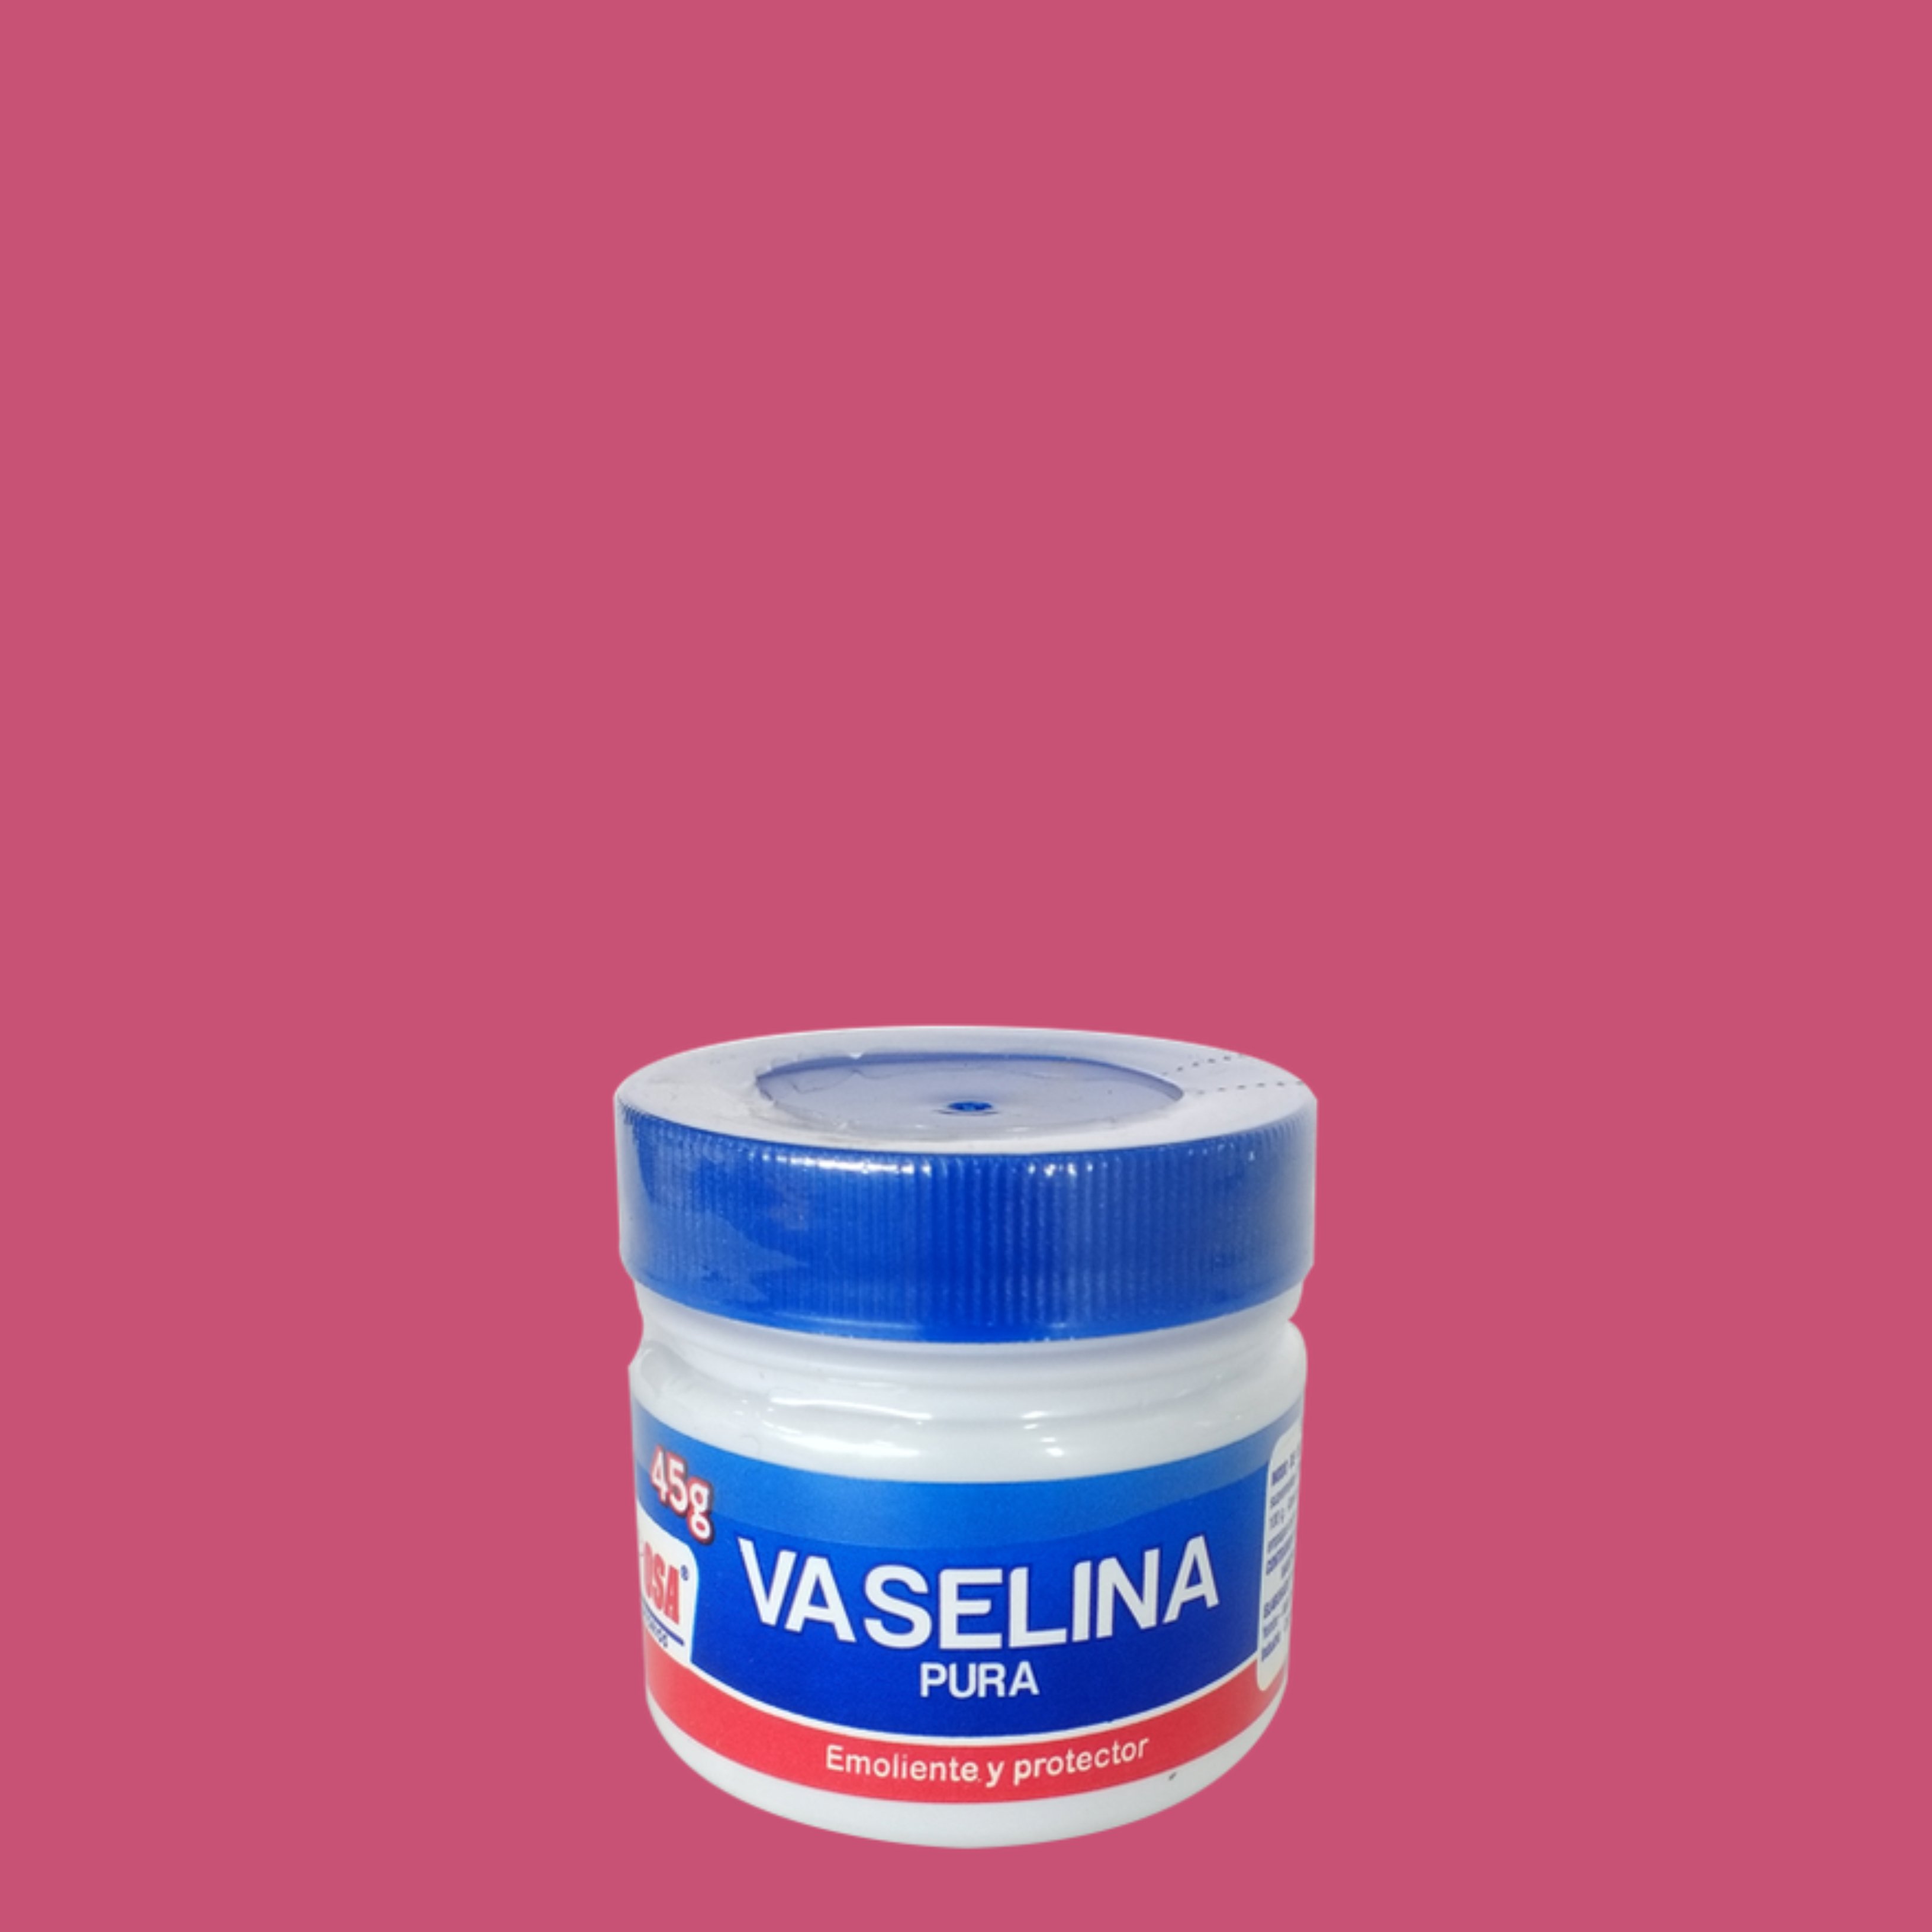 És adequat utilitzar la vaselina com a lubricant en les relacions sexuals?